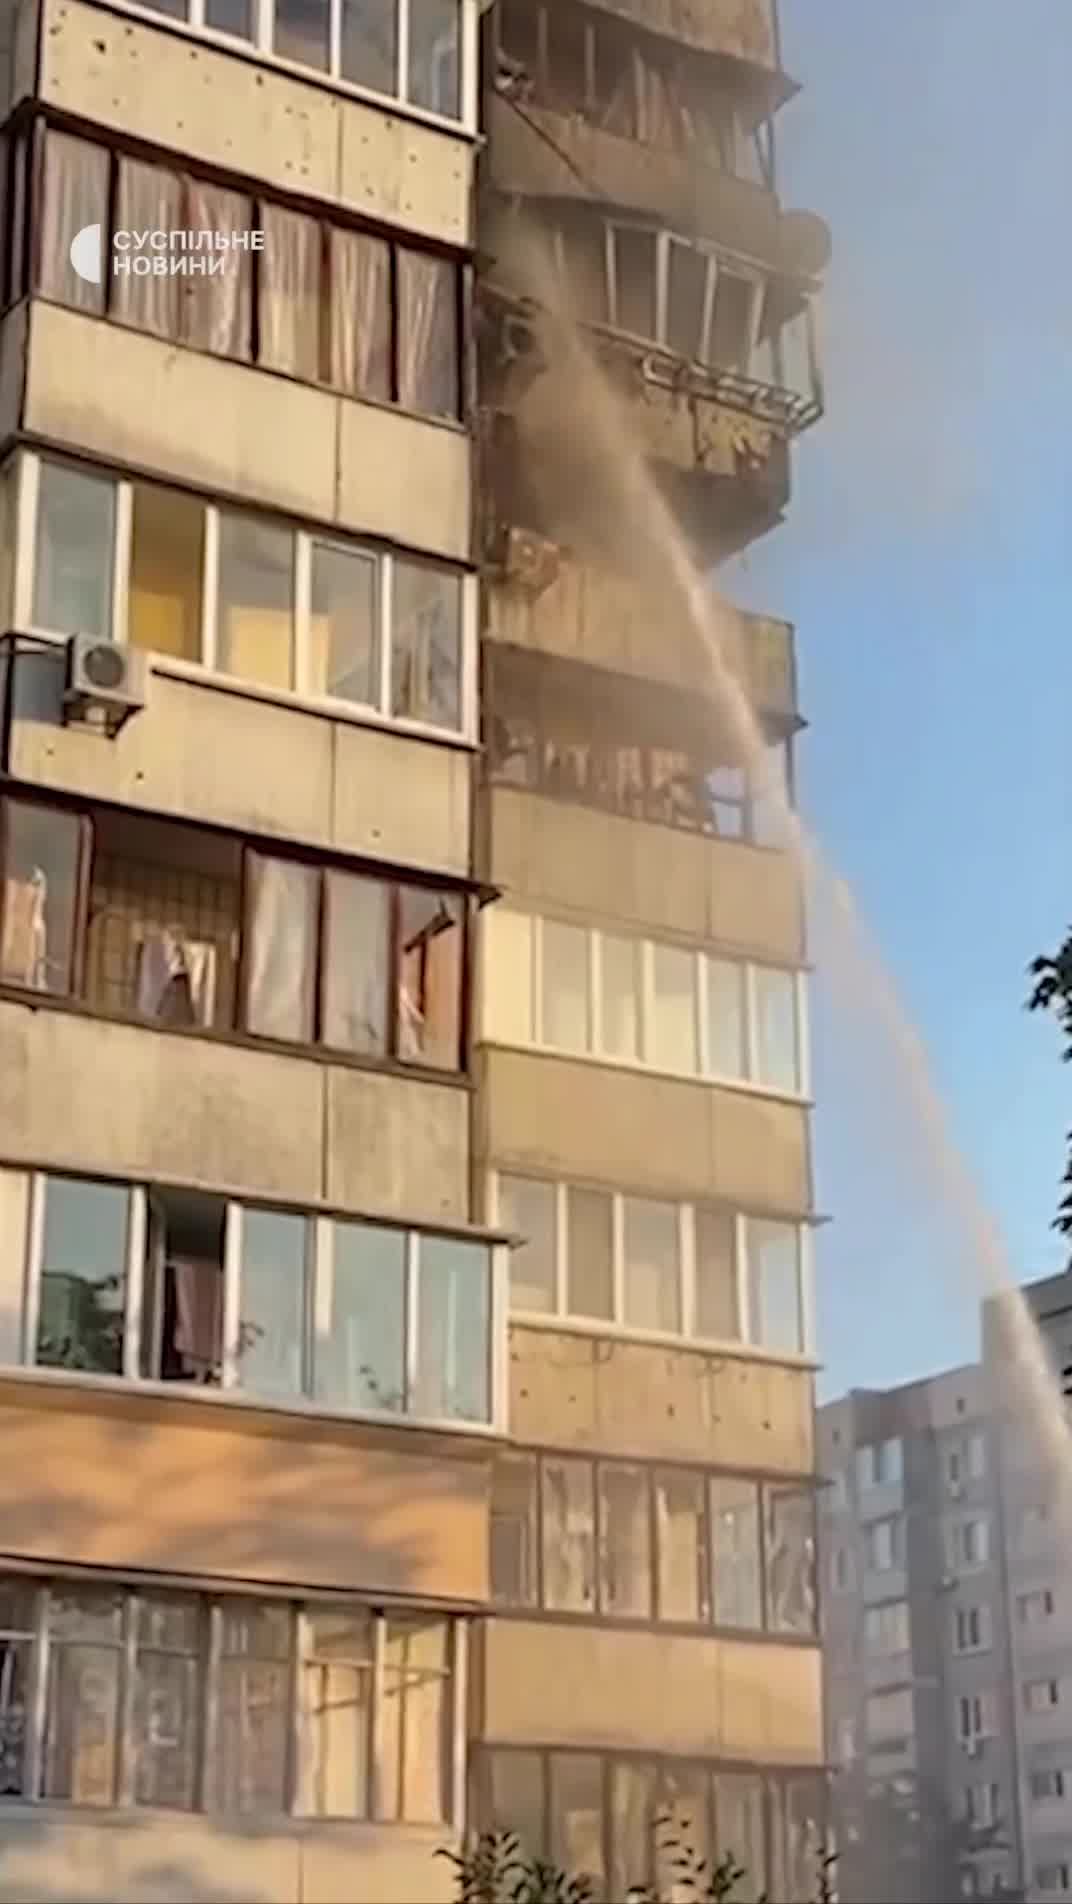 Կիևի Օբոլոնսկի շրջանում ռուսական հրթիռային հարվածի հետևանքով վնասվել է բնակելի շենք